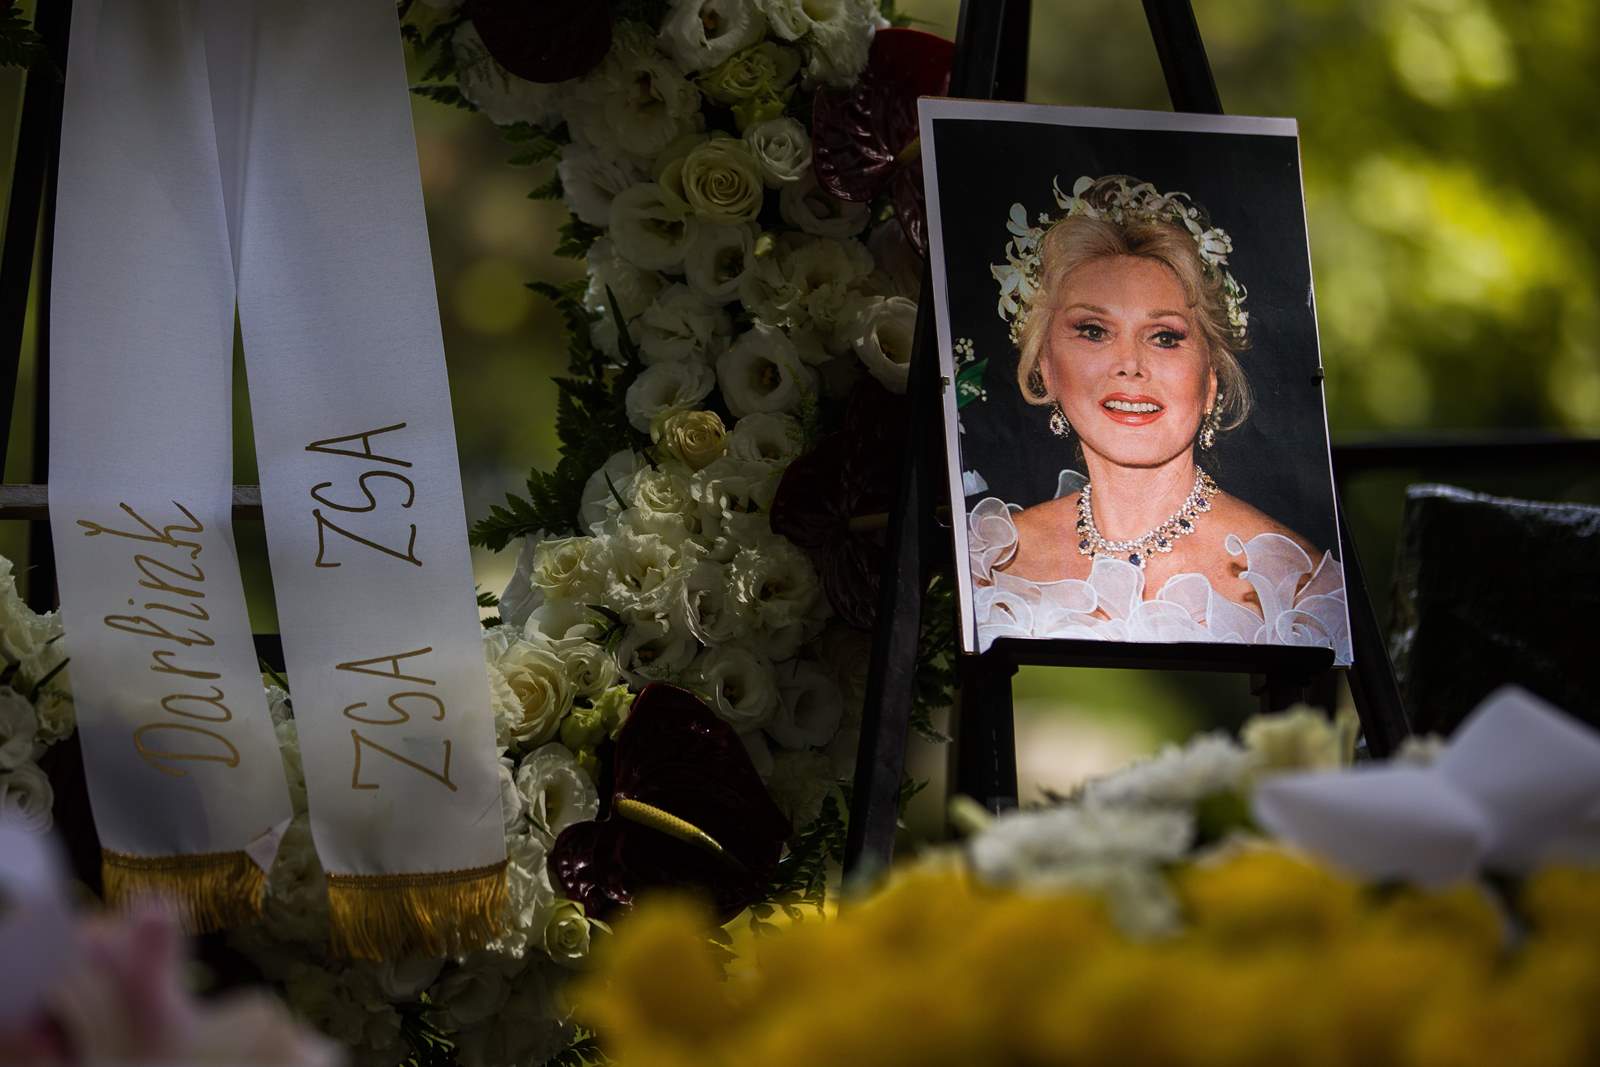 تم دفن رماد زازسا غابور يوم الثلاثاء في مقبرة شارع فيومي في بودابست ، بعد حوالي خمس سنوات من وفاتها.